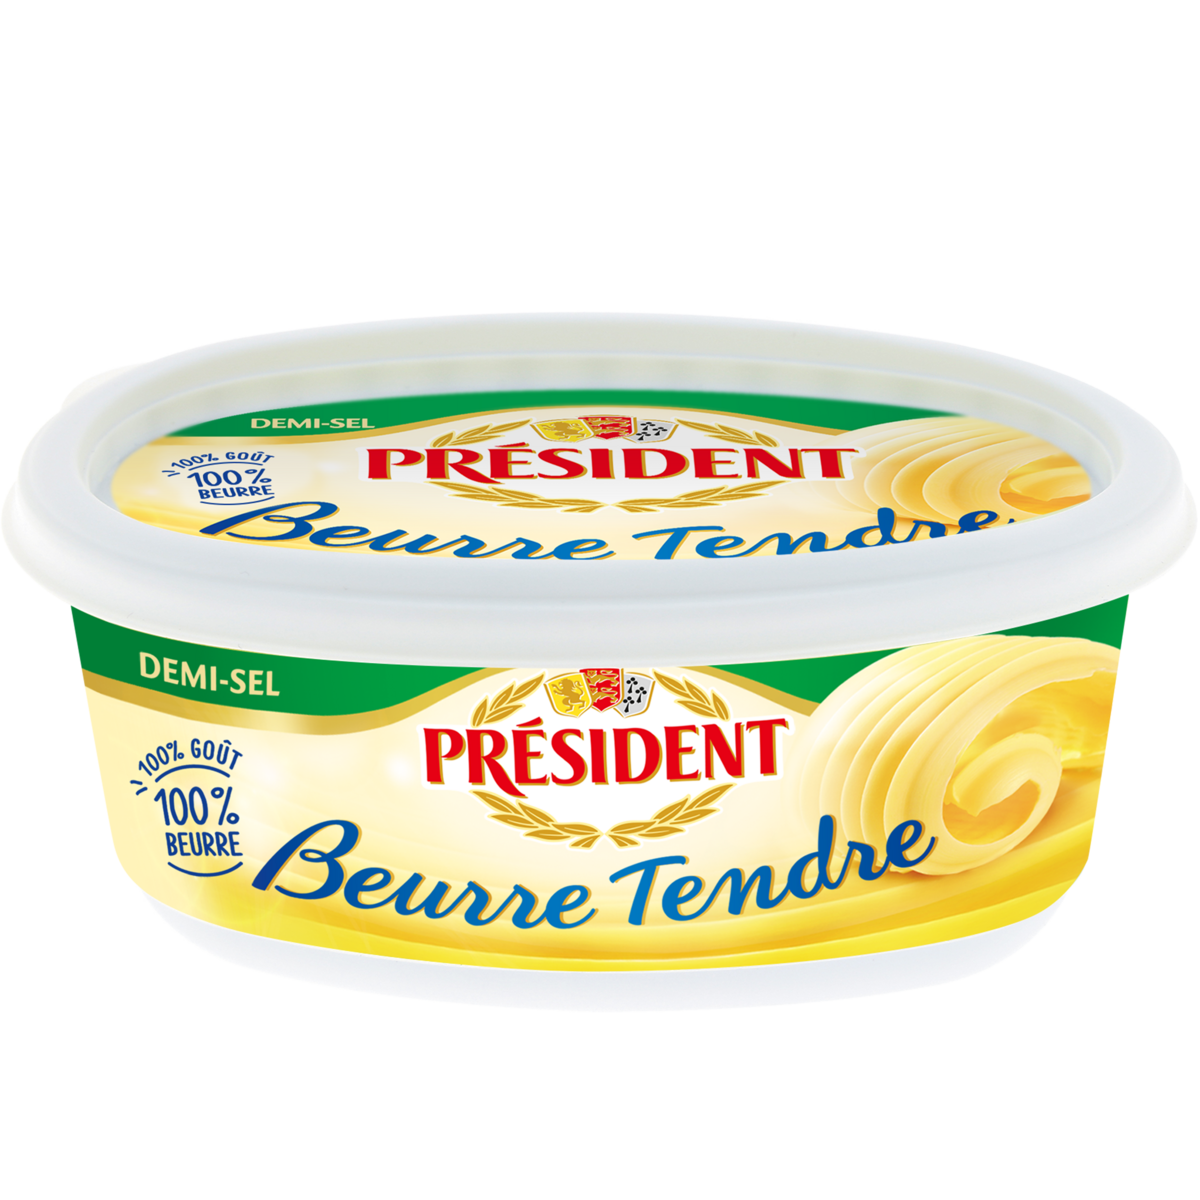 President Semi-salted mild butter 250g